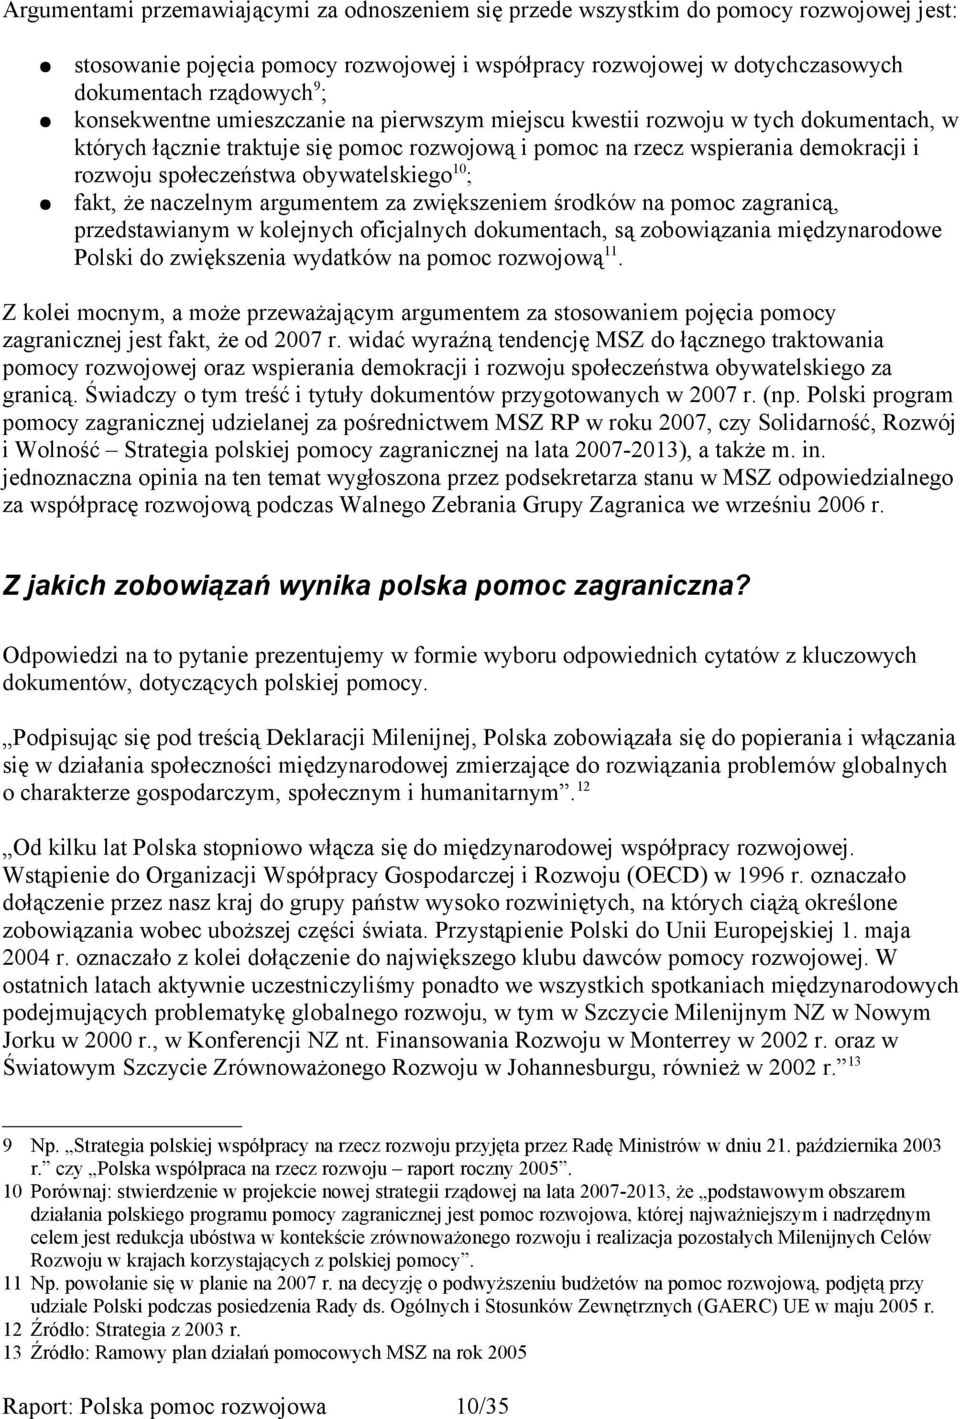 obywatelskiego 10 ; fakt, że naczelnym argumentem za zwiększeniem środków na pomoc zagranicą, przedstawianym w kolejnych oficjalnych dokumentach, są zobowiązania międzynarodowe Polski do zwiększenia